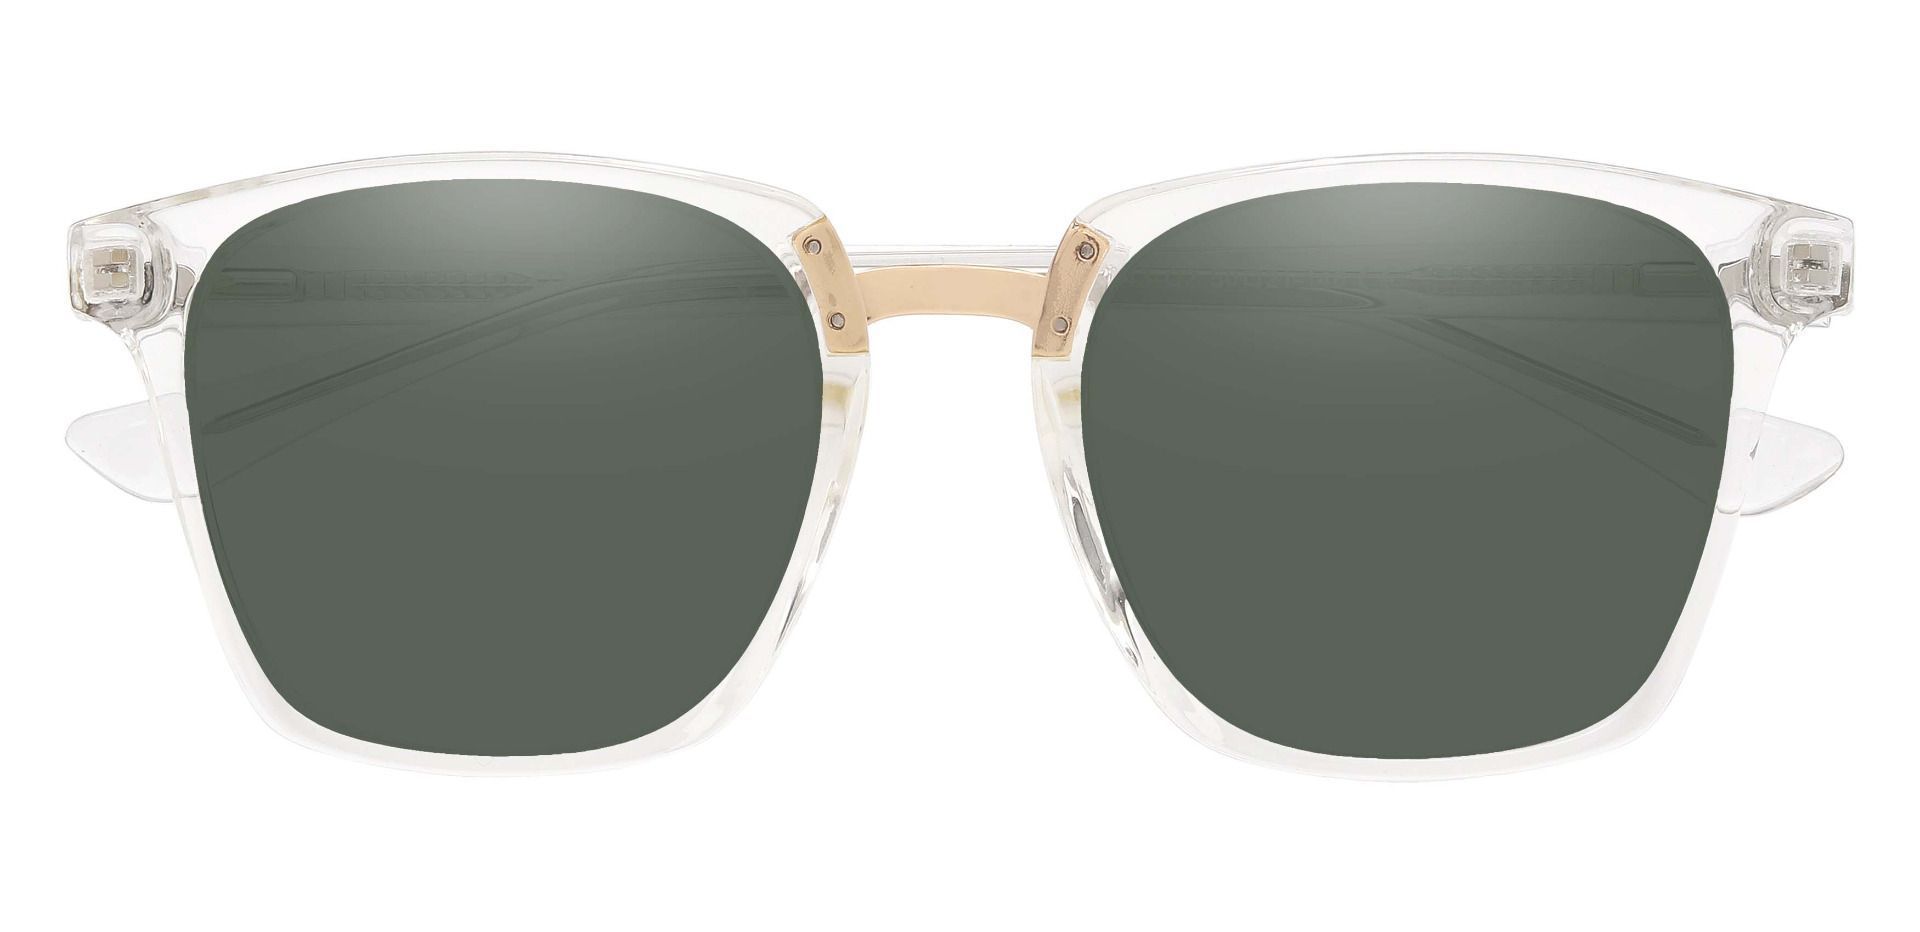 Delta Square Prescription Sunglasses - Clear Frame With Green Lenses